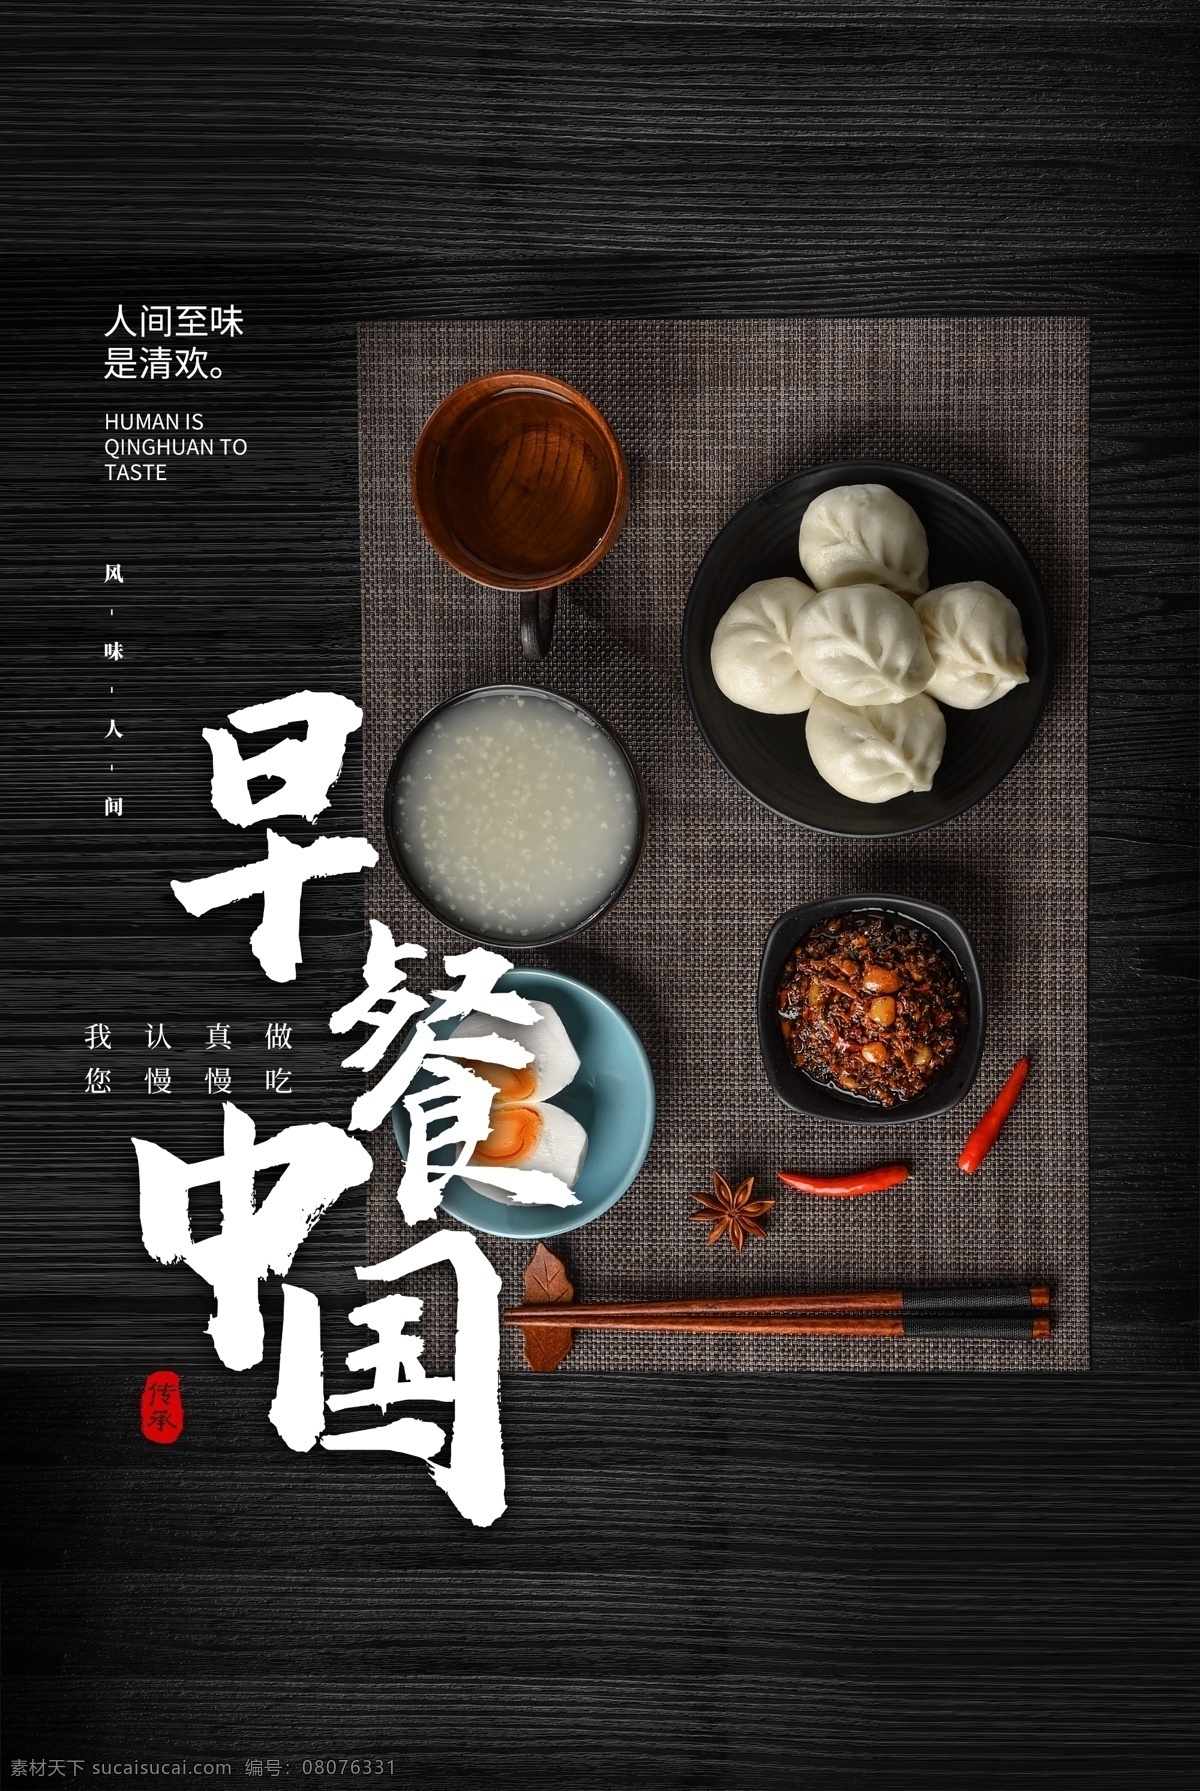 早餐 中国 美食 活动 促销 宣传海报 早餐中国 宣传 海报 餐饮美食 类